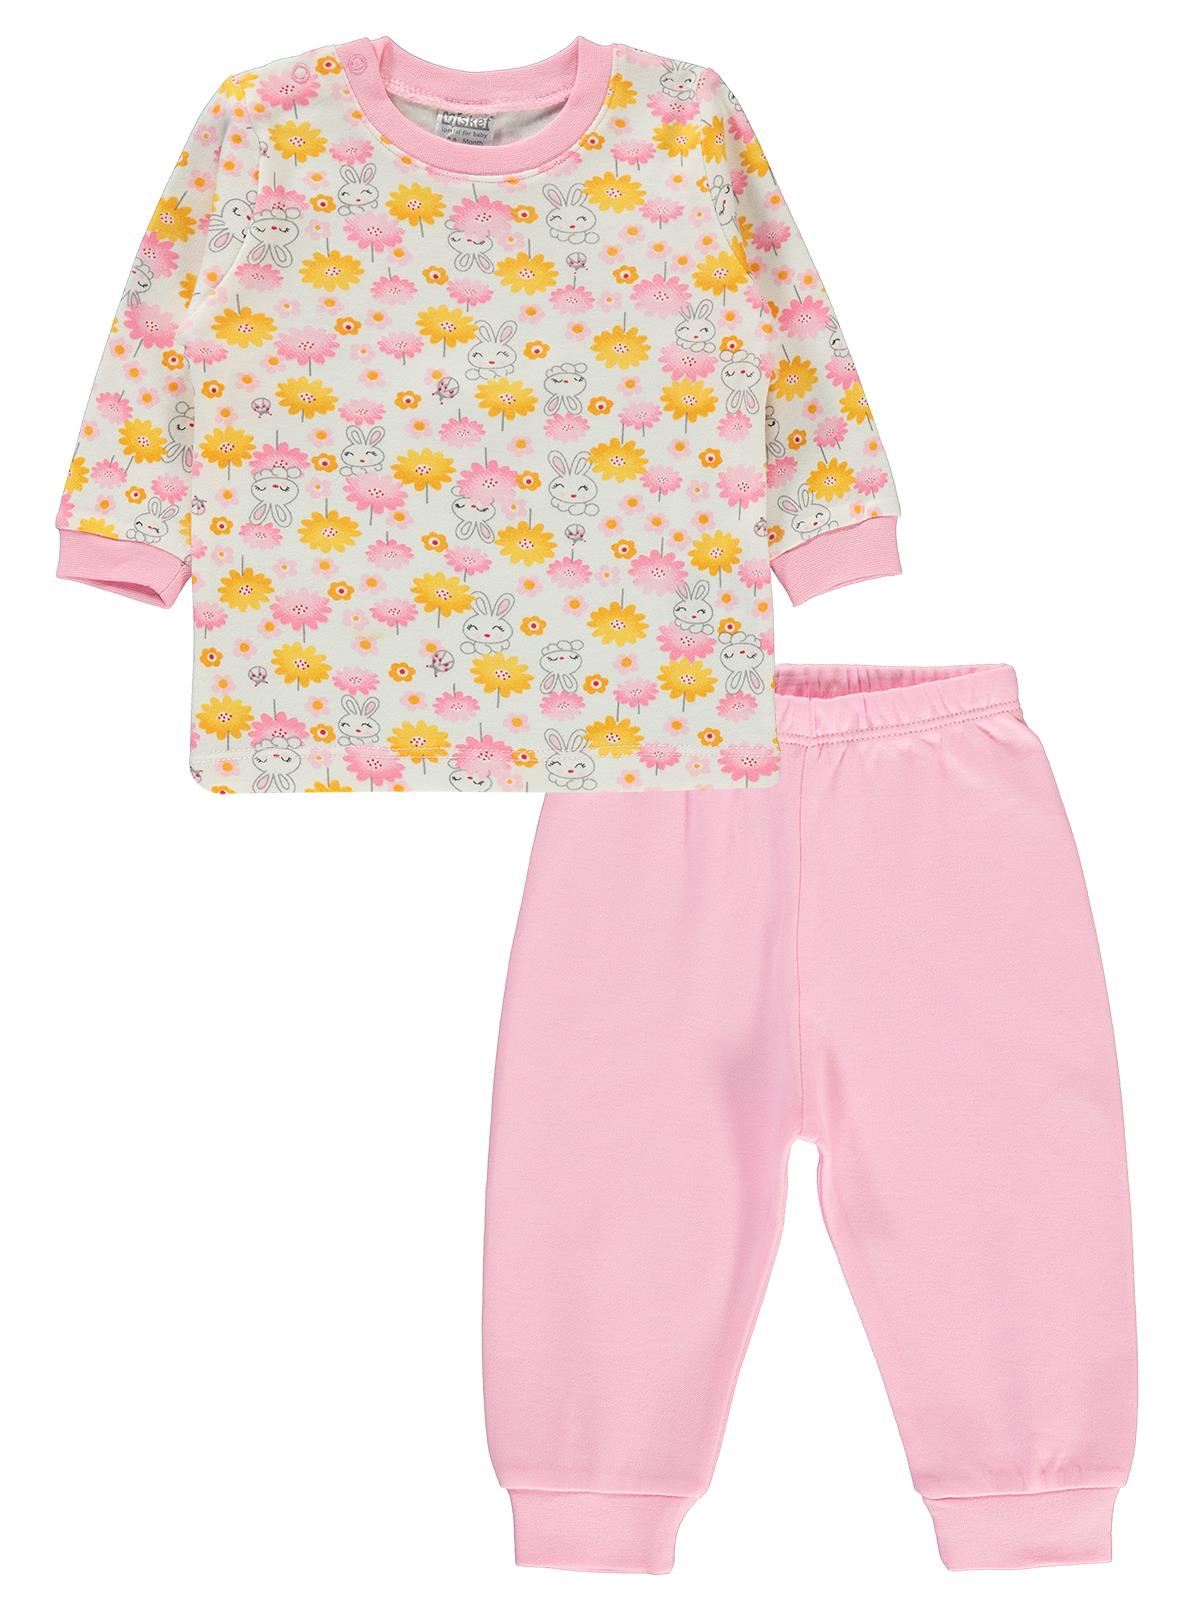 Misket Kız Bebek Pijama Takımı 6-12 Ay Pembe